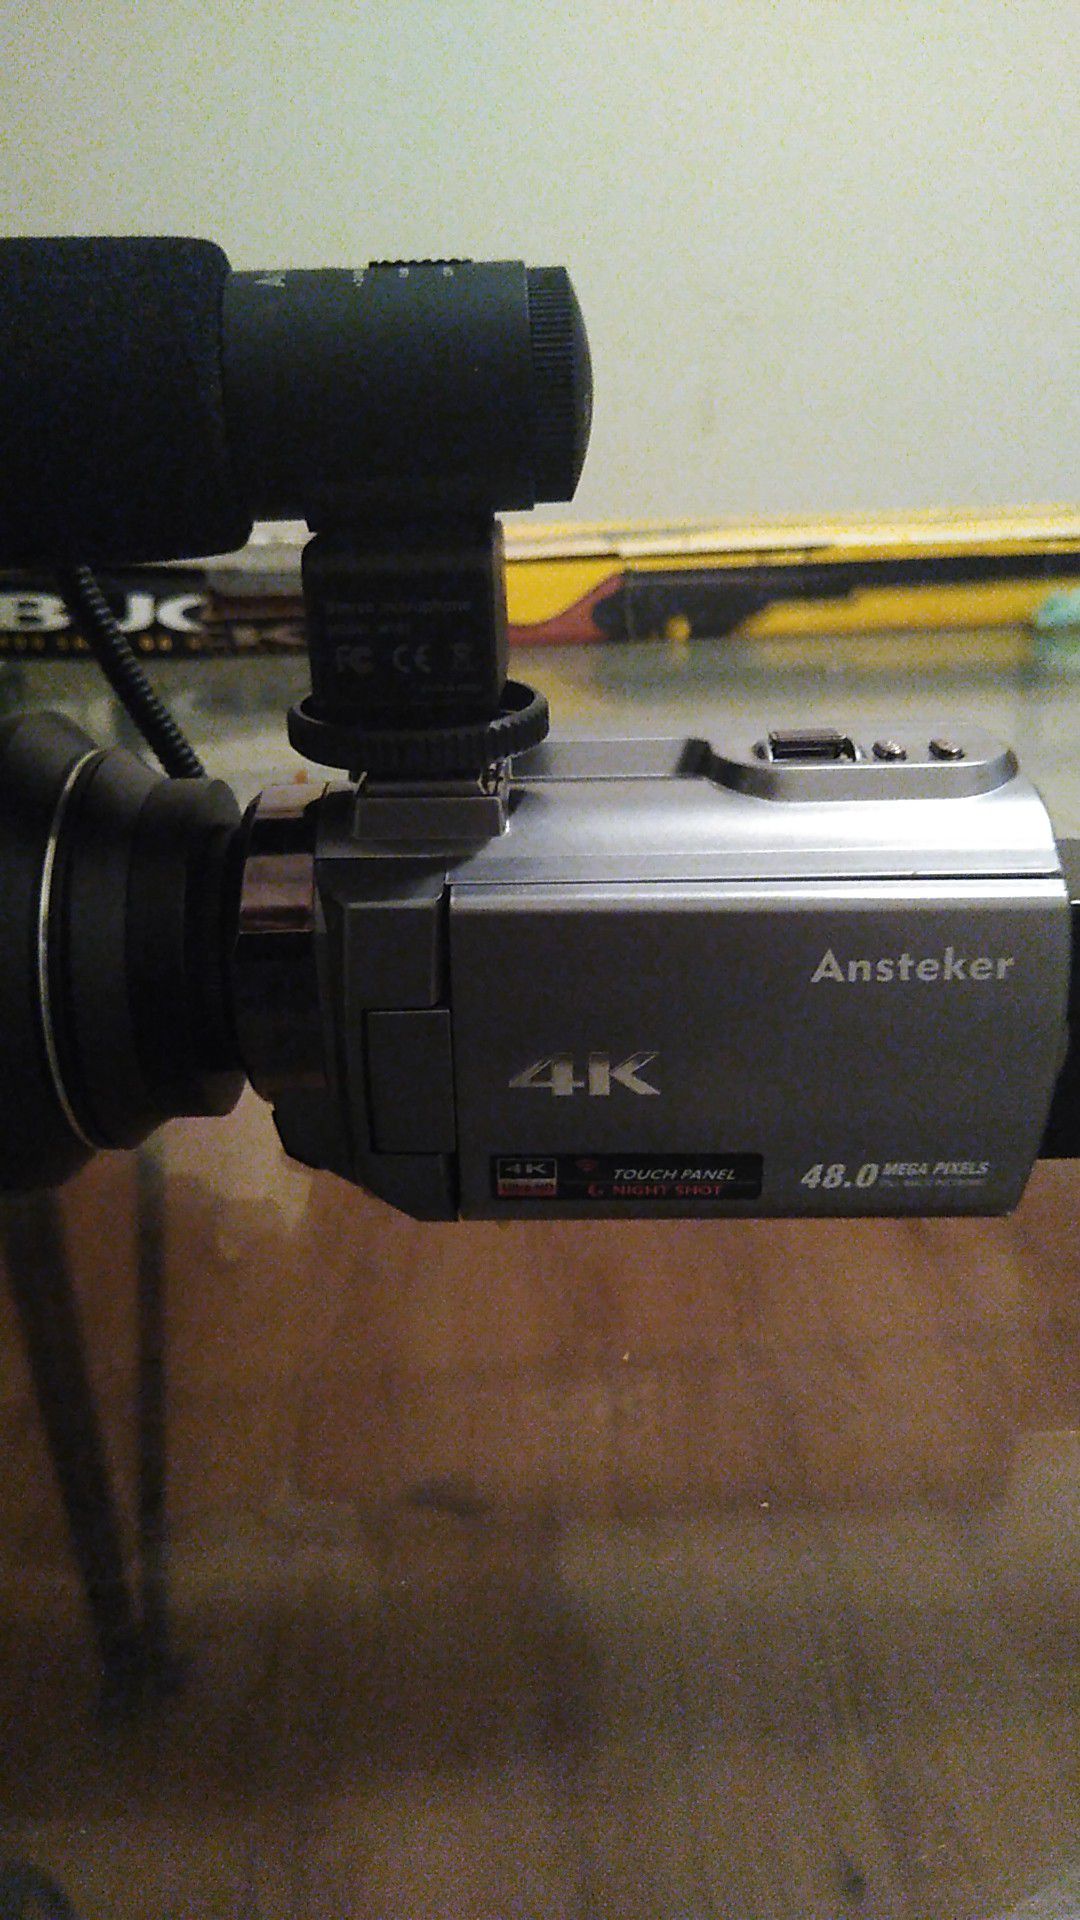 4K ansteker digital camera